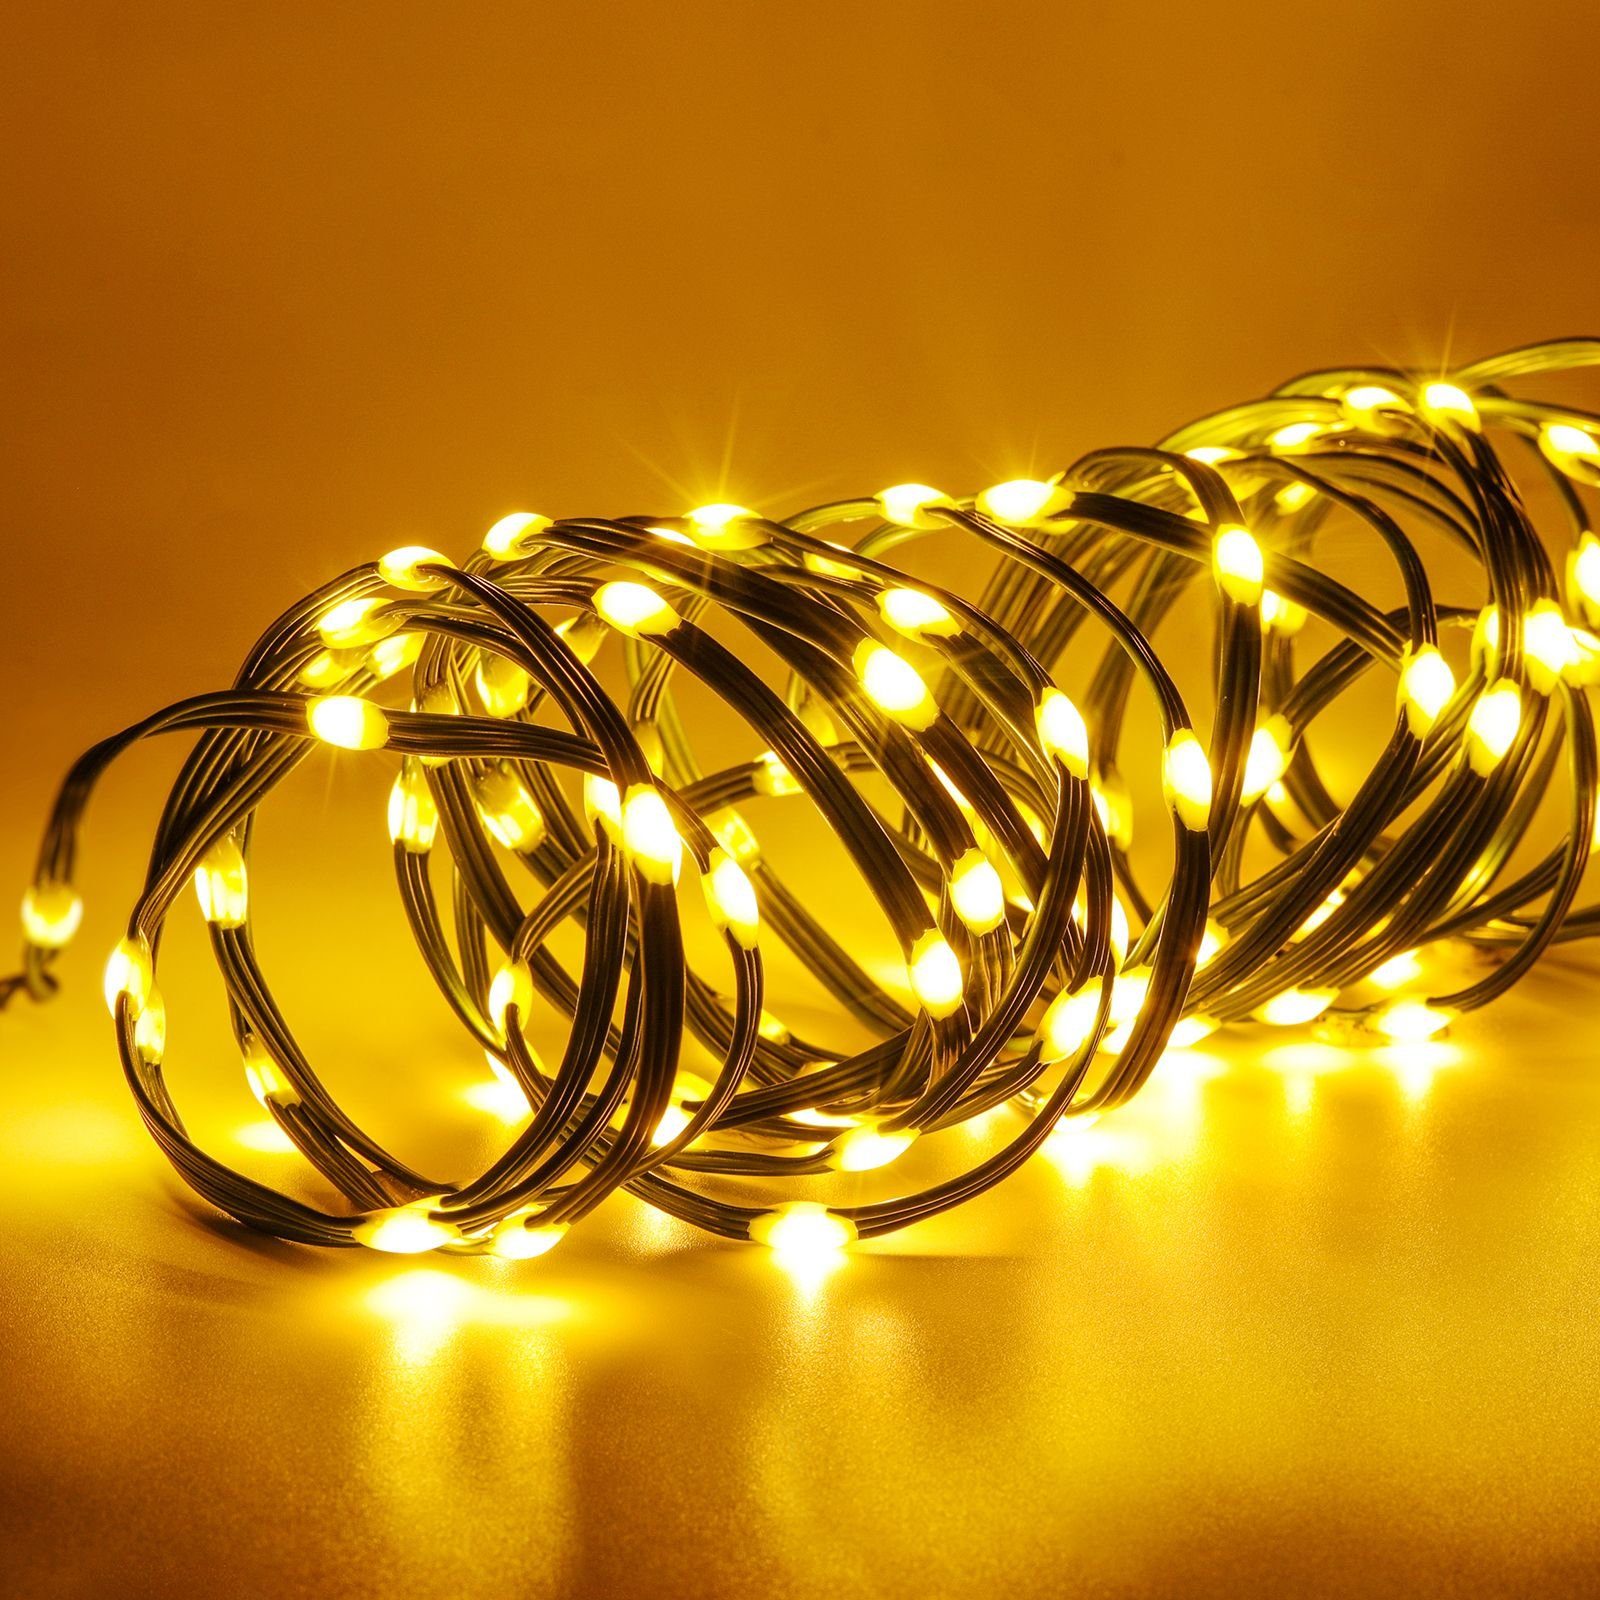 Elegear LED-Lichterkette Außen, Weihanchtsdeko Lichterkette 25M 500LEDs, 500-flammig, mit Fernbedienung, IP65 für Weihnachtsbaum